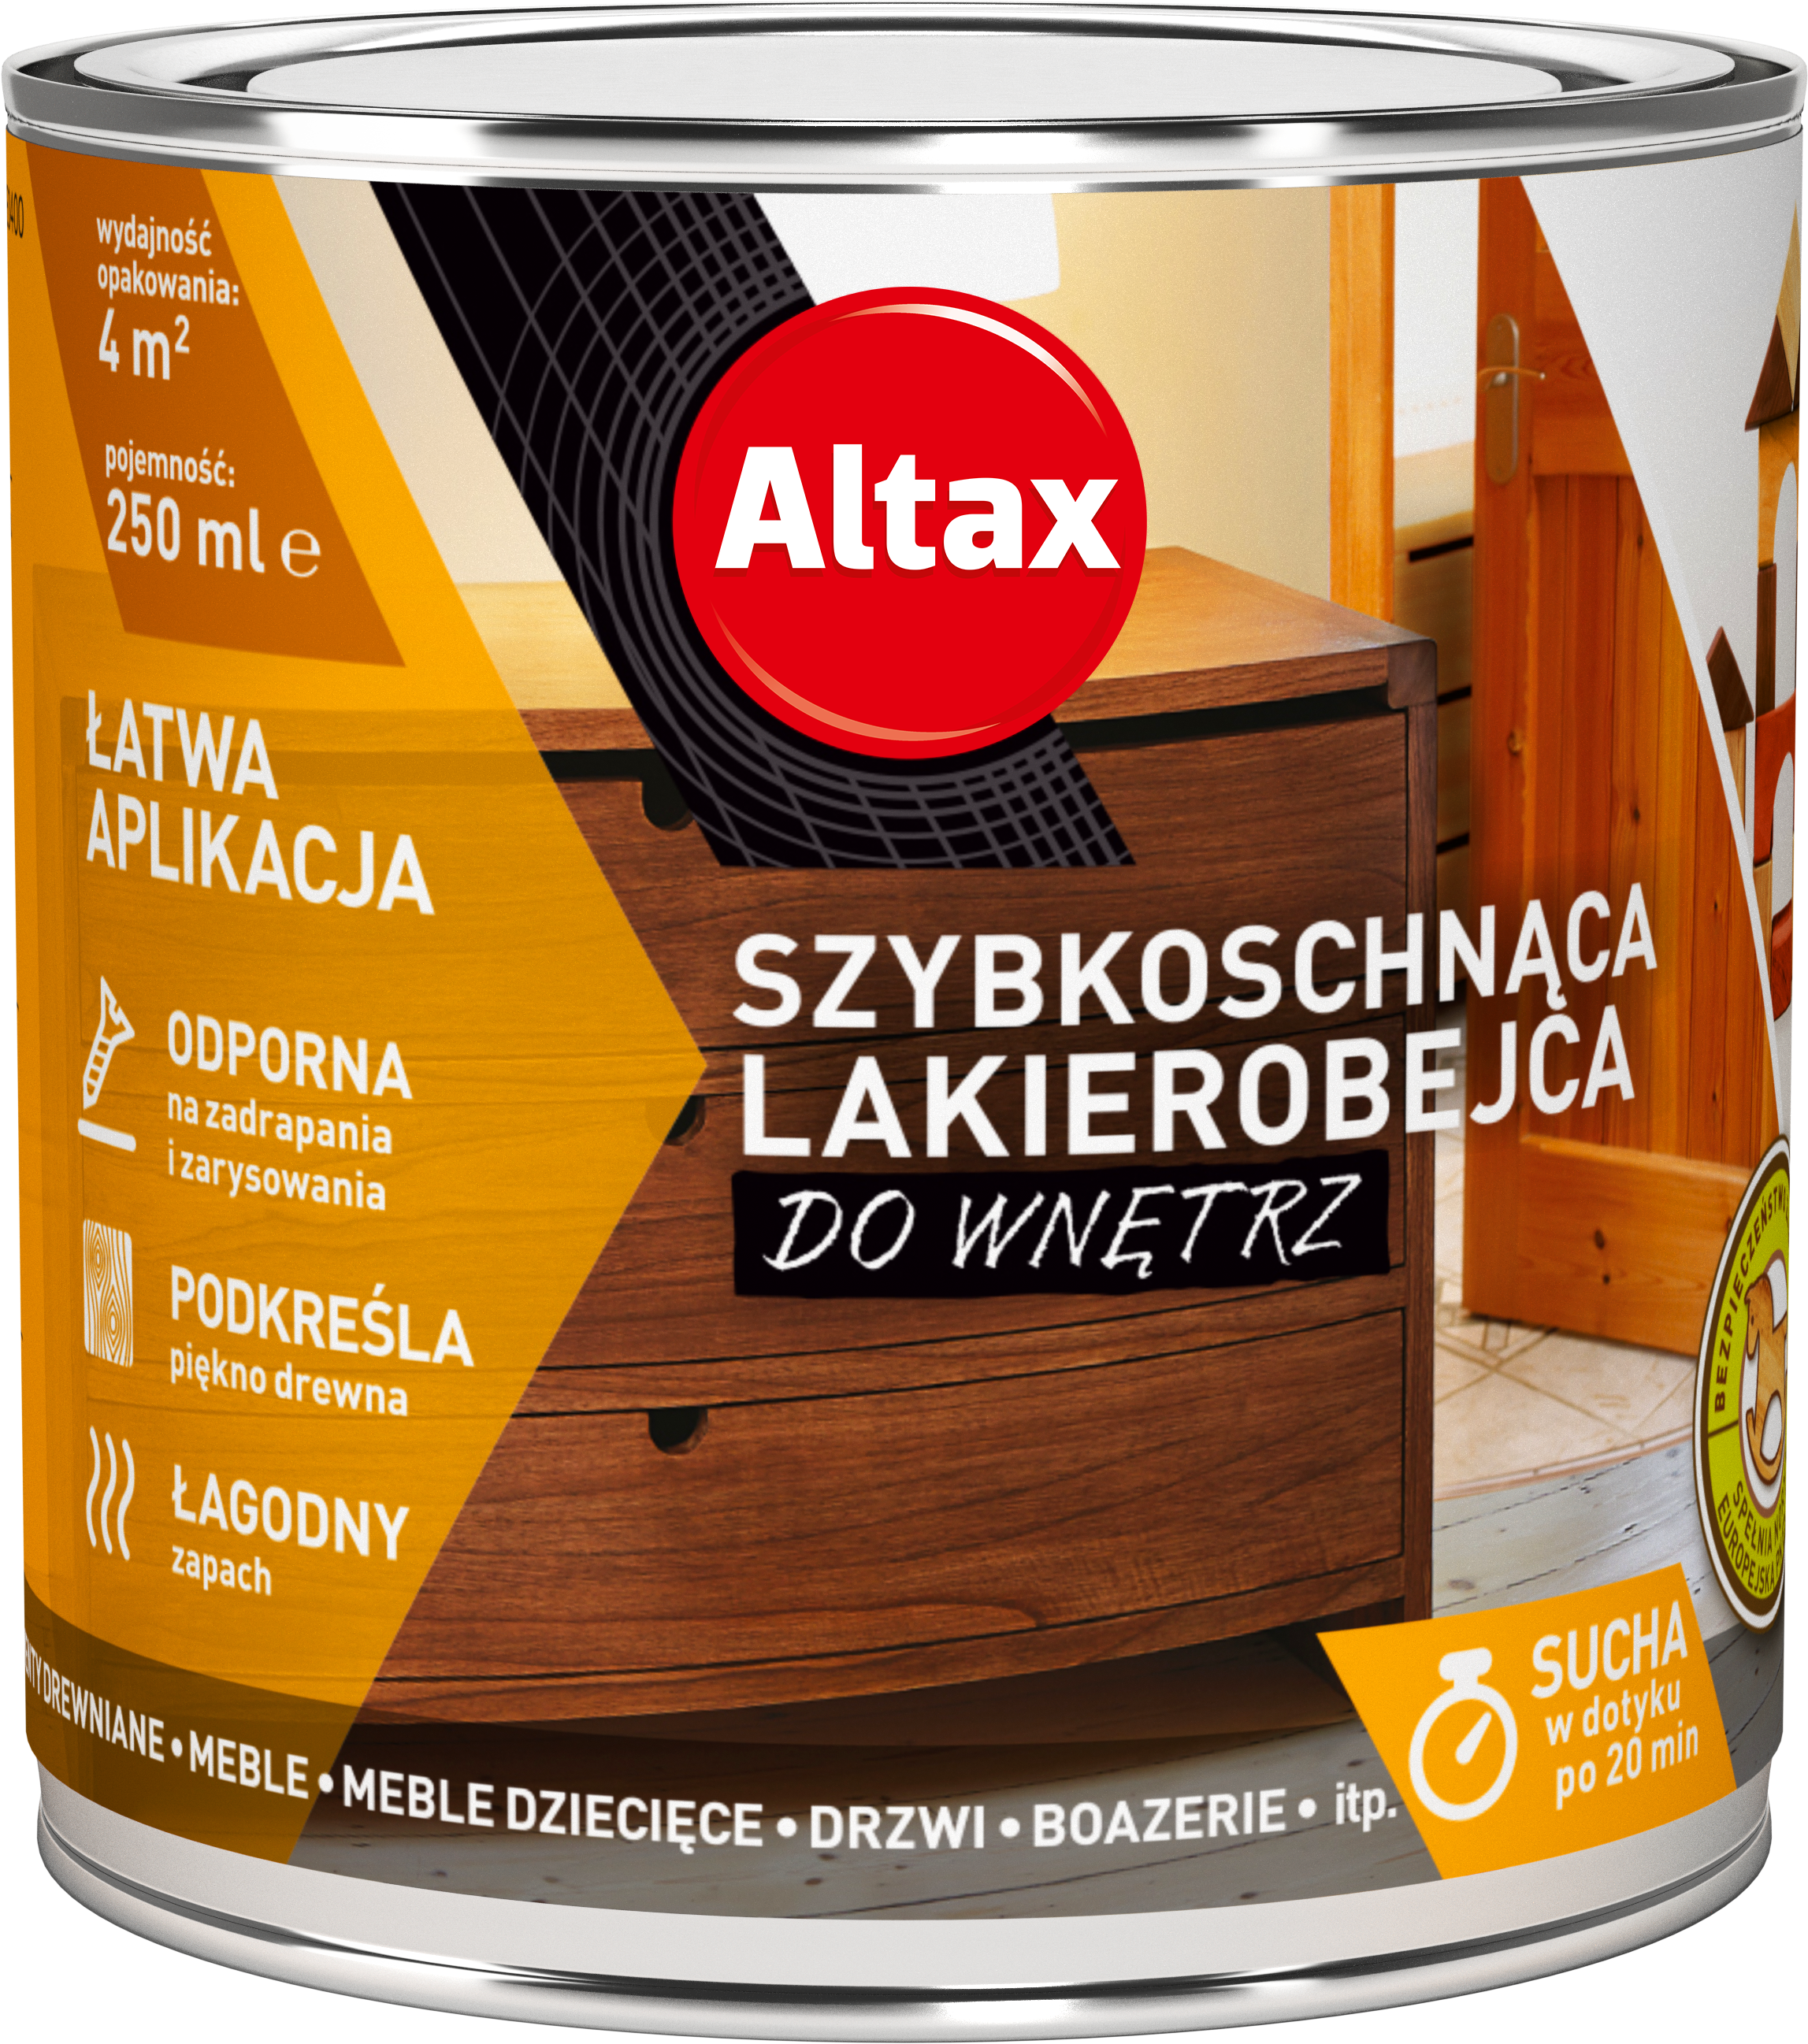 ALTAX-szybkoschnaca-lakierobejca-do-wnetrz-250ml-01